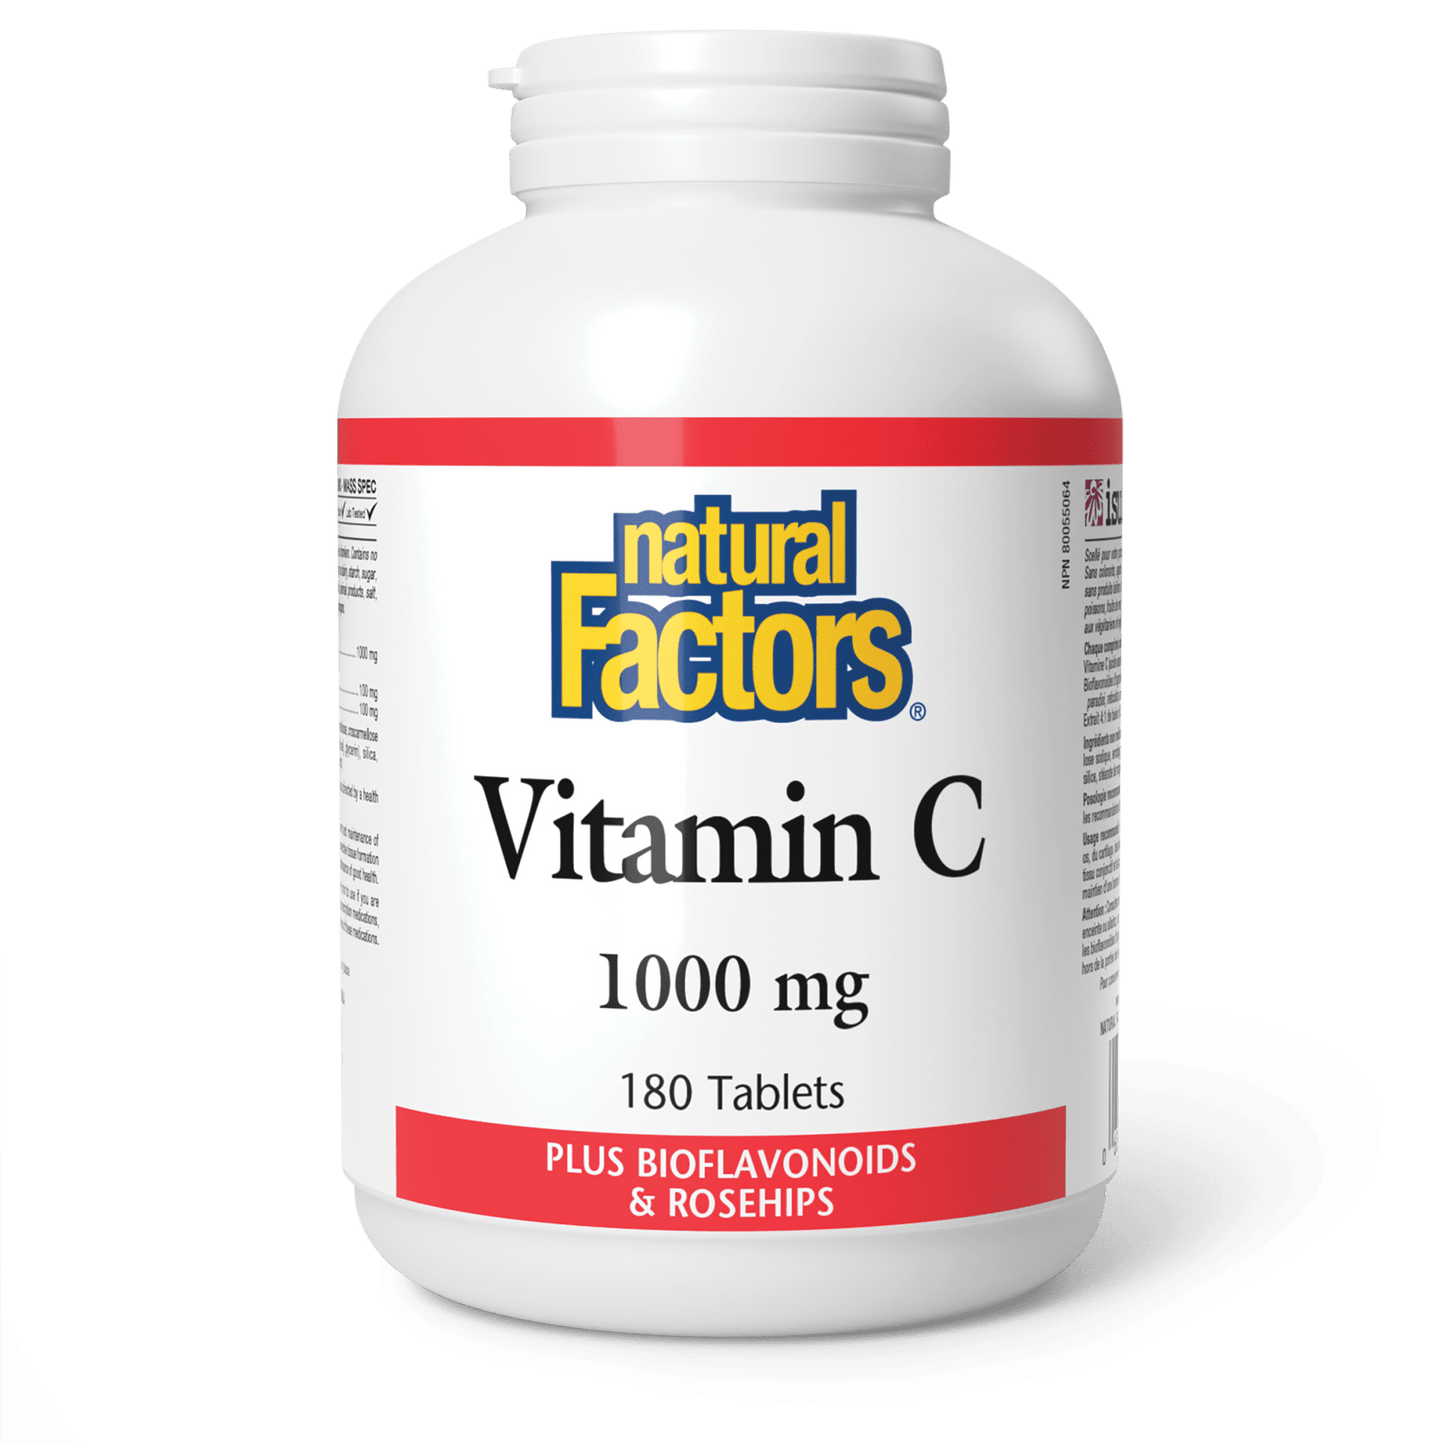 Vitamin C 1000 mg, Natural Factors|v|image|1345